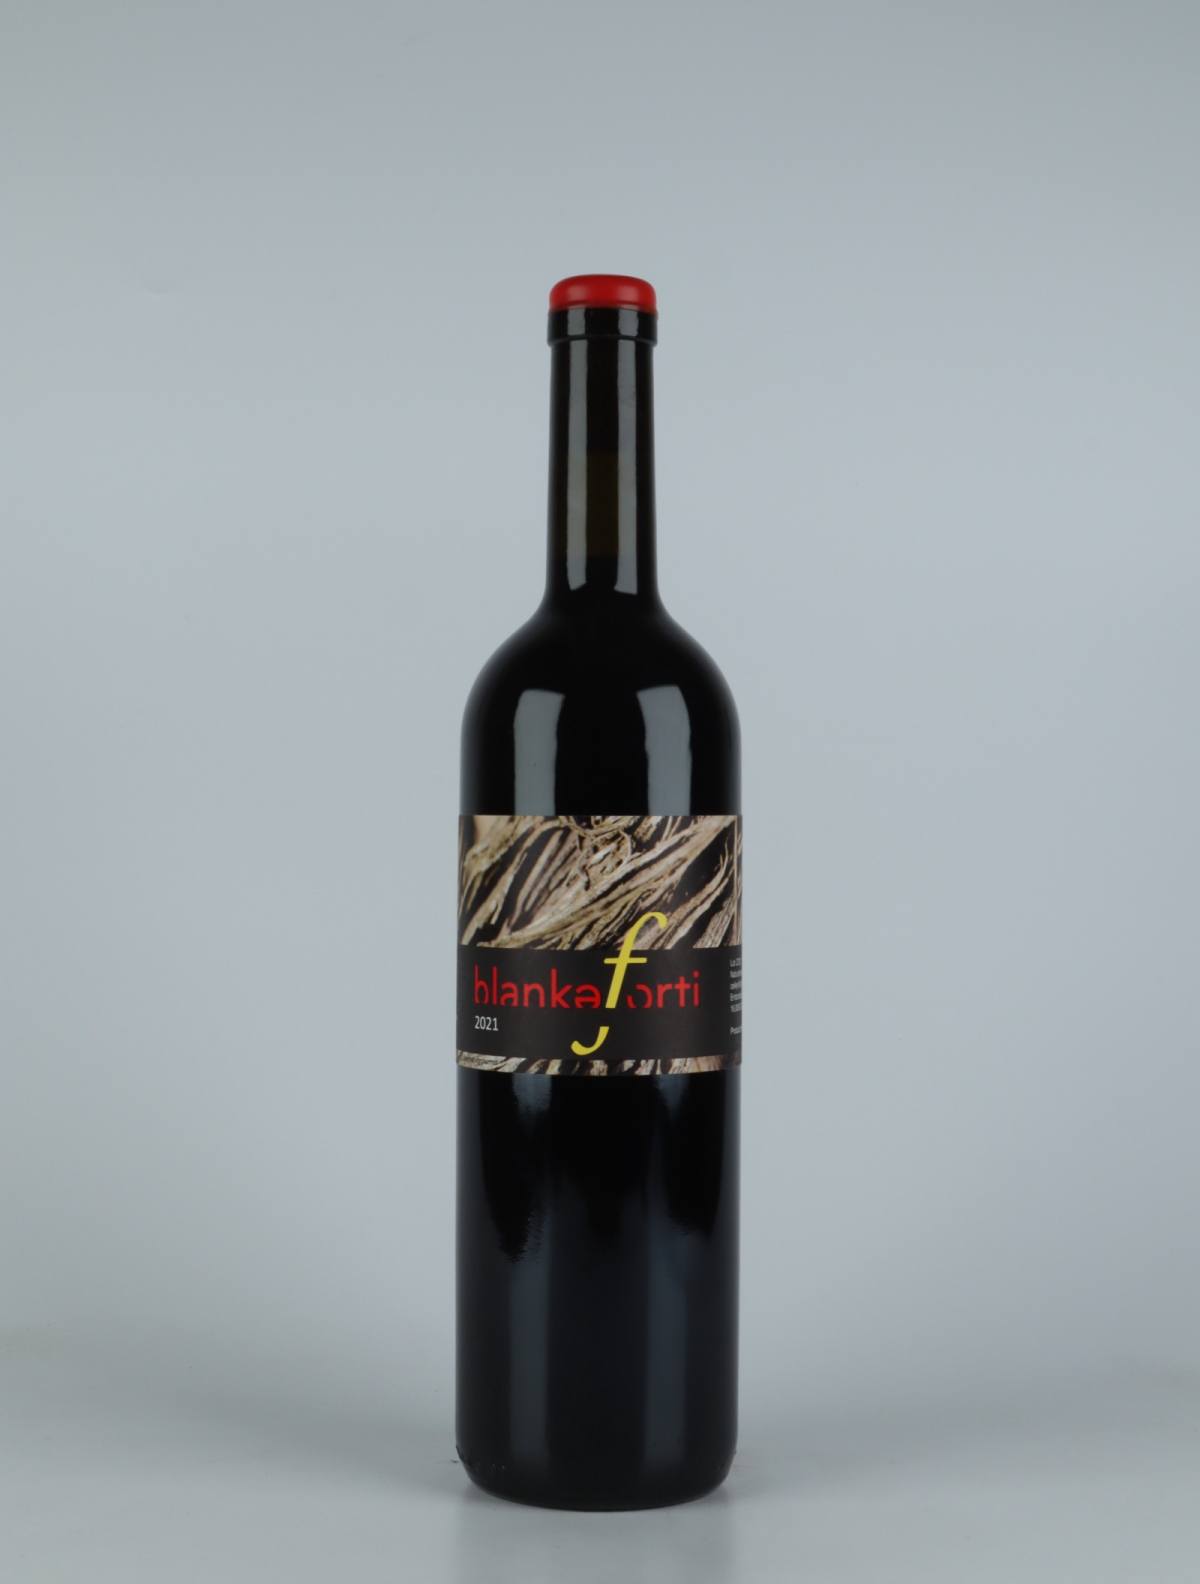 En flaske 2021 Blankaforti Rødvin fra Jordi Llorens, Catalonien i Spanien